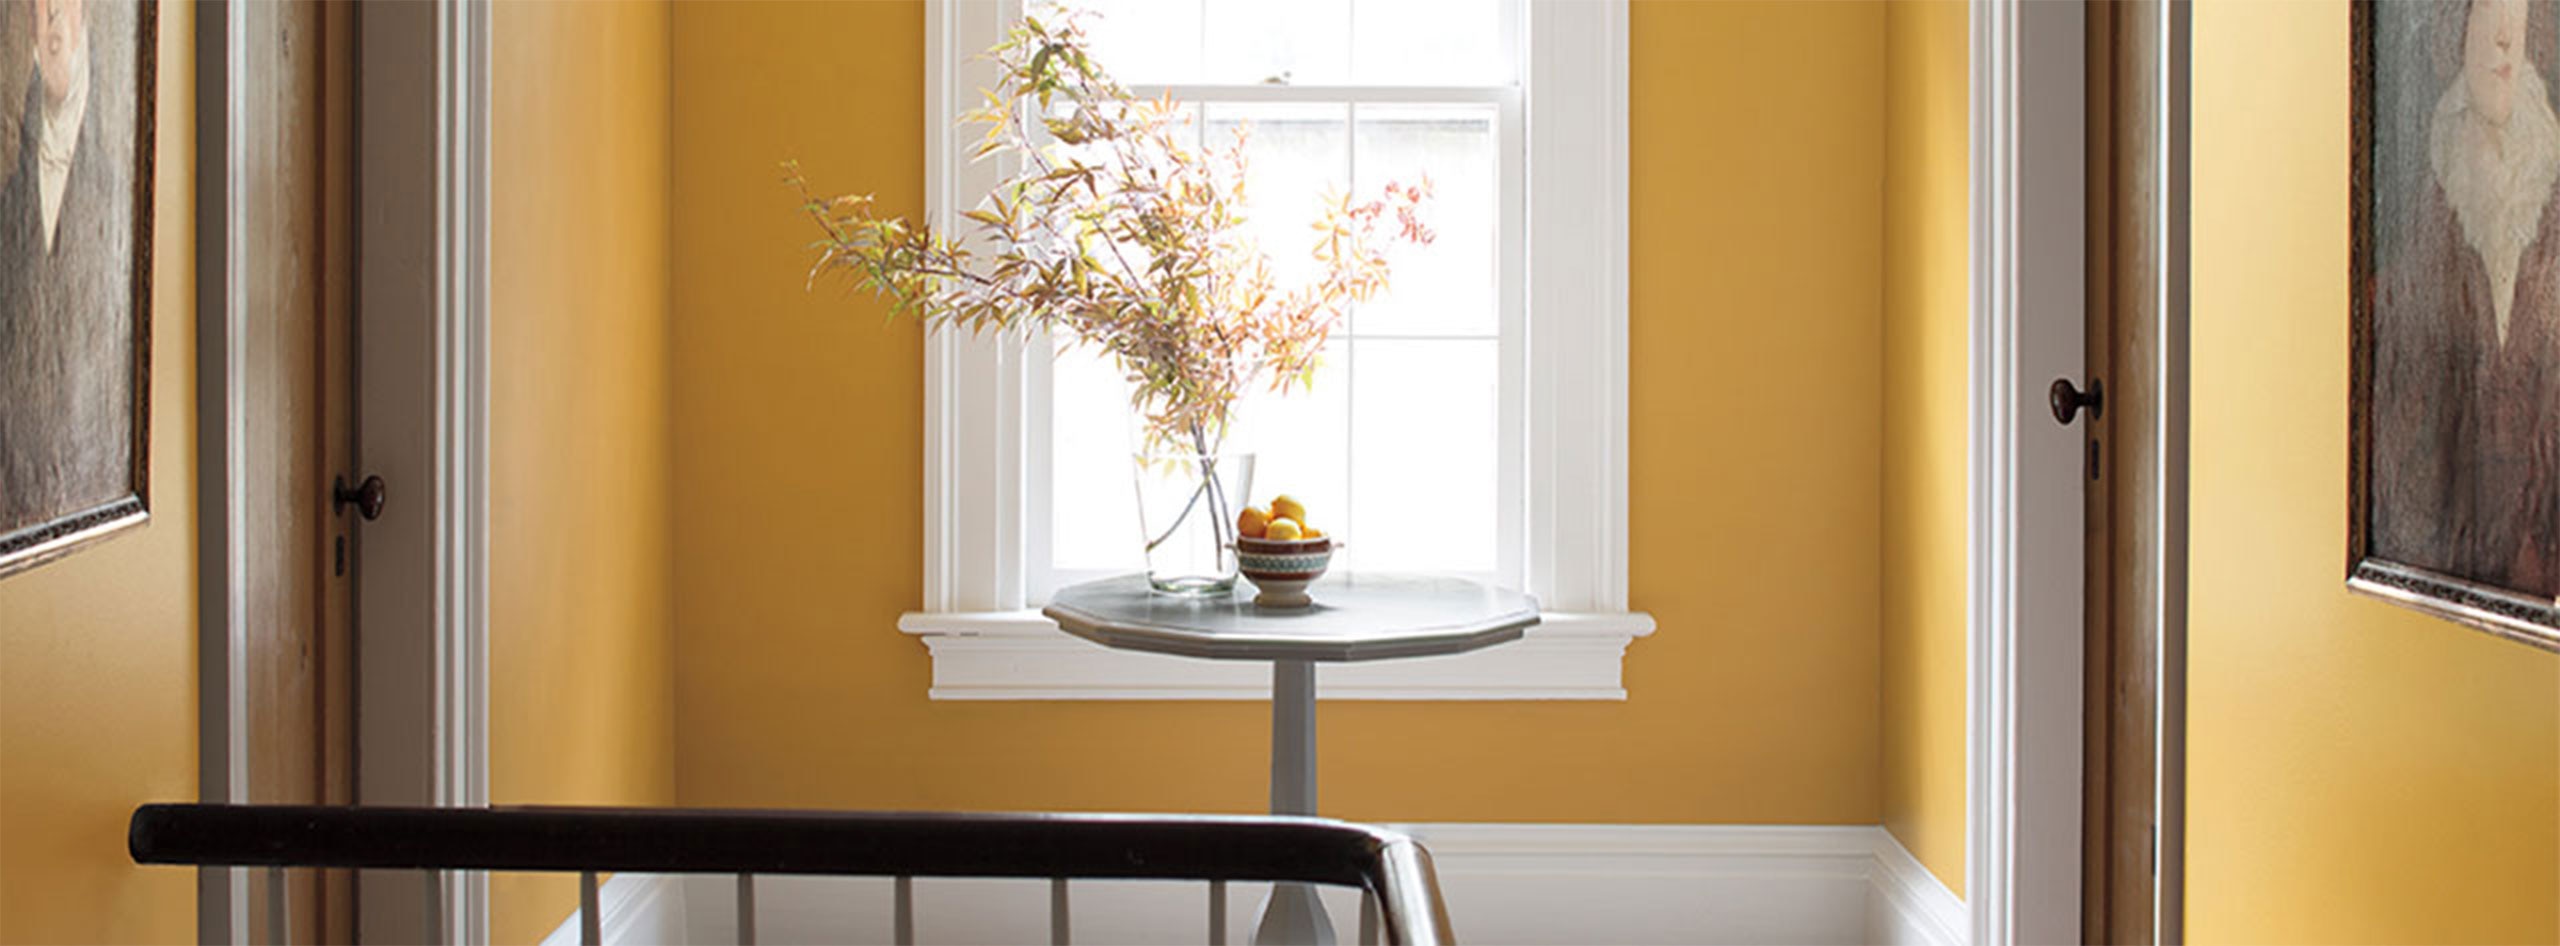 Un couloir peint en jaune arborant une table en bois et des fleurs, deux portes, une fenêtre et des moulures blanches.